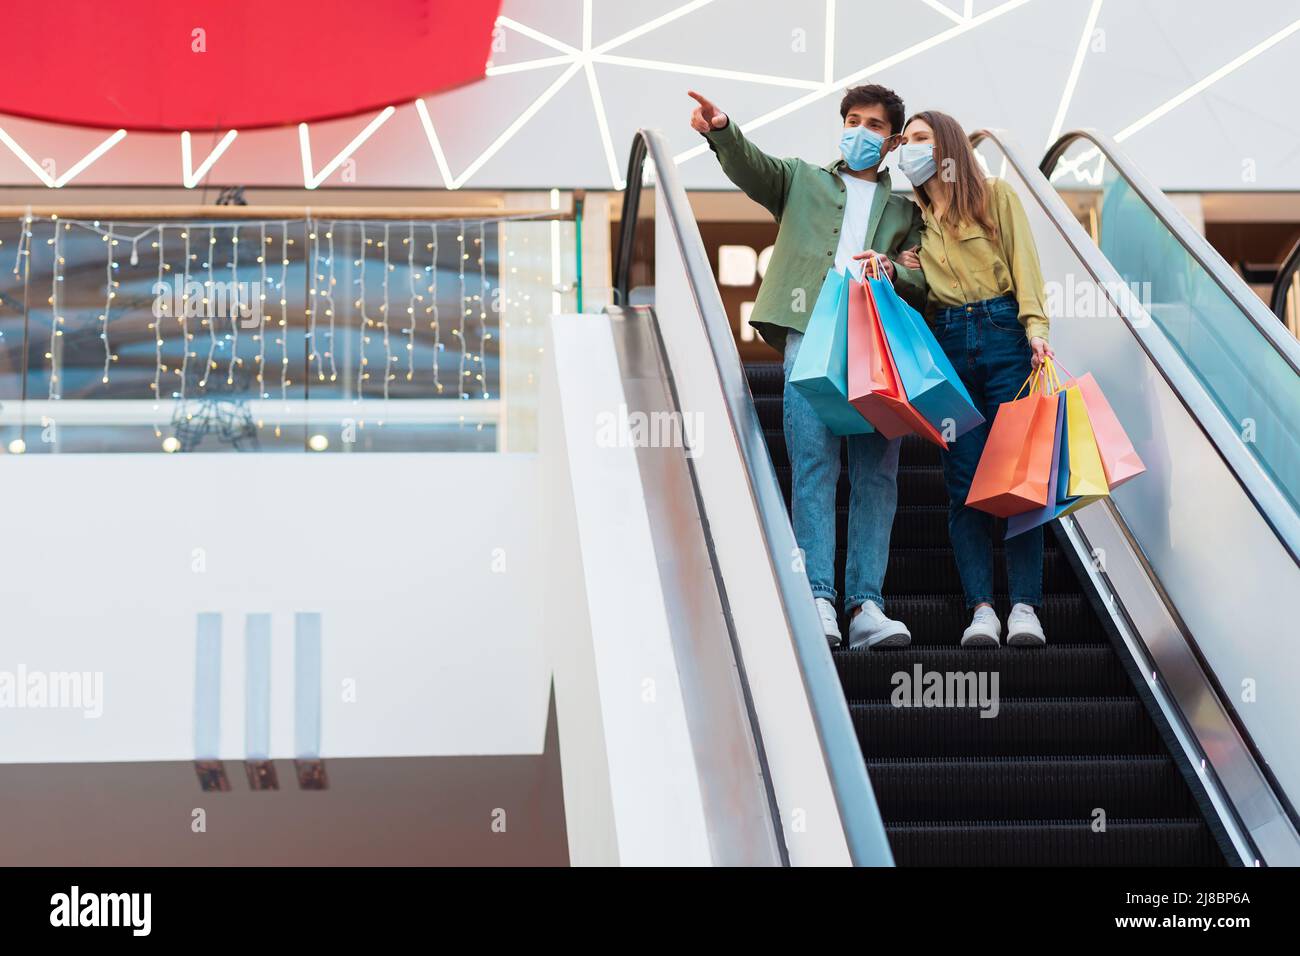 Paar Shopping In Masken Stehend Auf Beweglichen Treppen In Der Mall Stockfoto